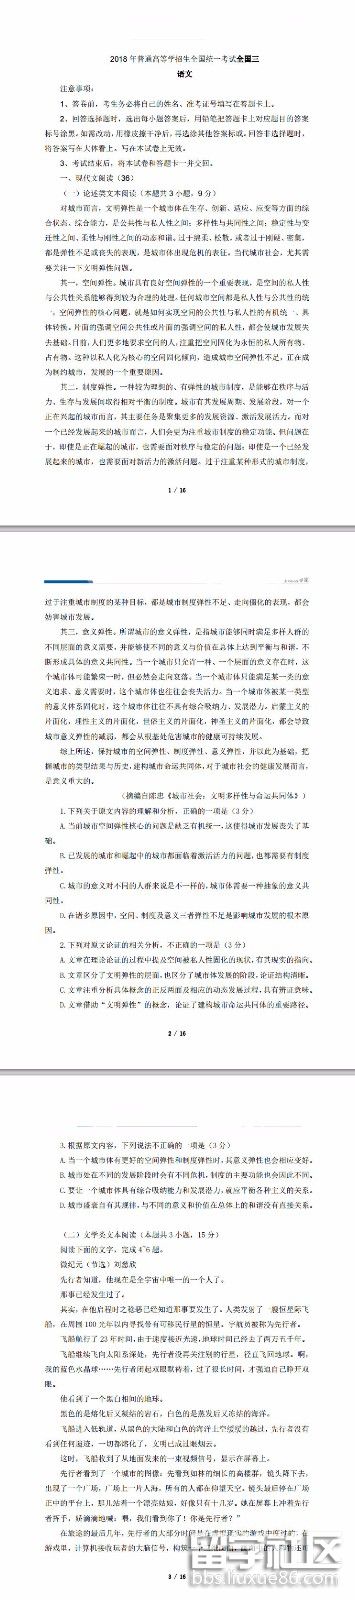 2018年廣西高考中文真實問題和答案已公布